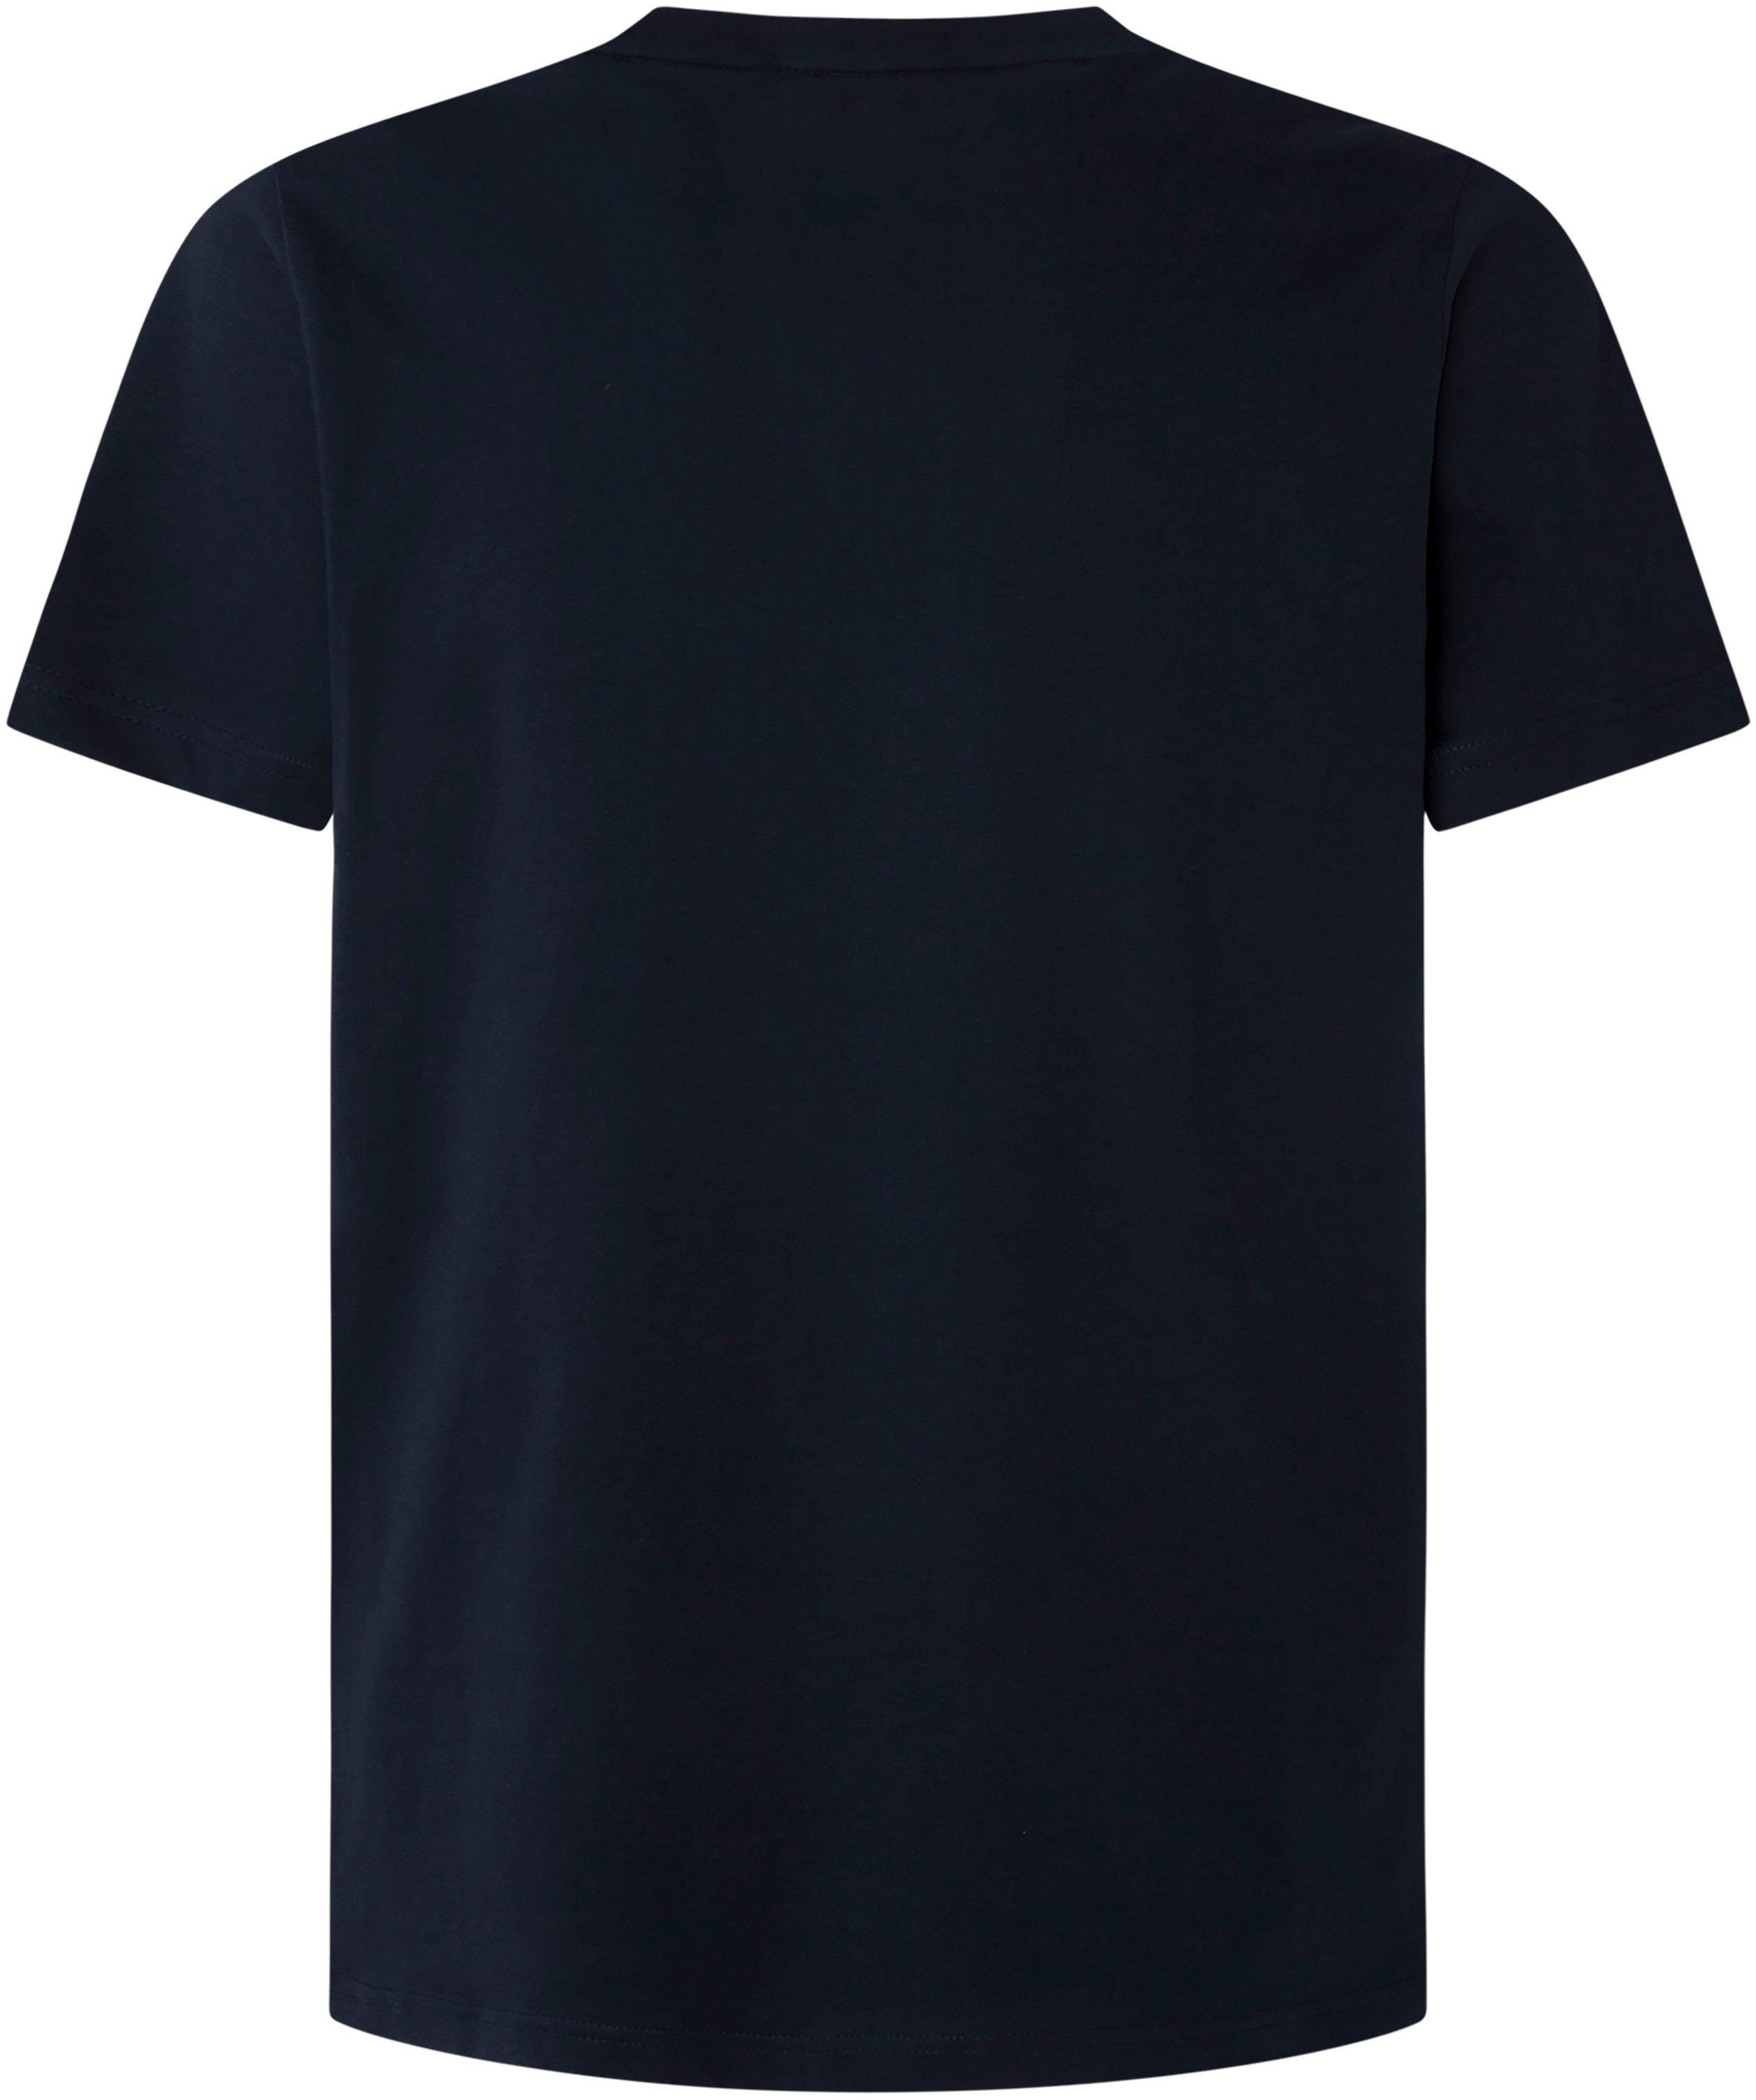 Pepe Jeans T-shirt in online shop OTTO | de